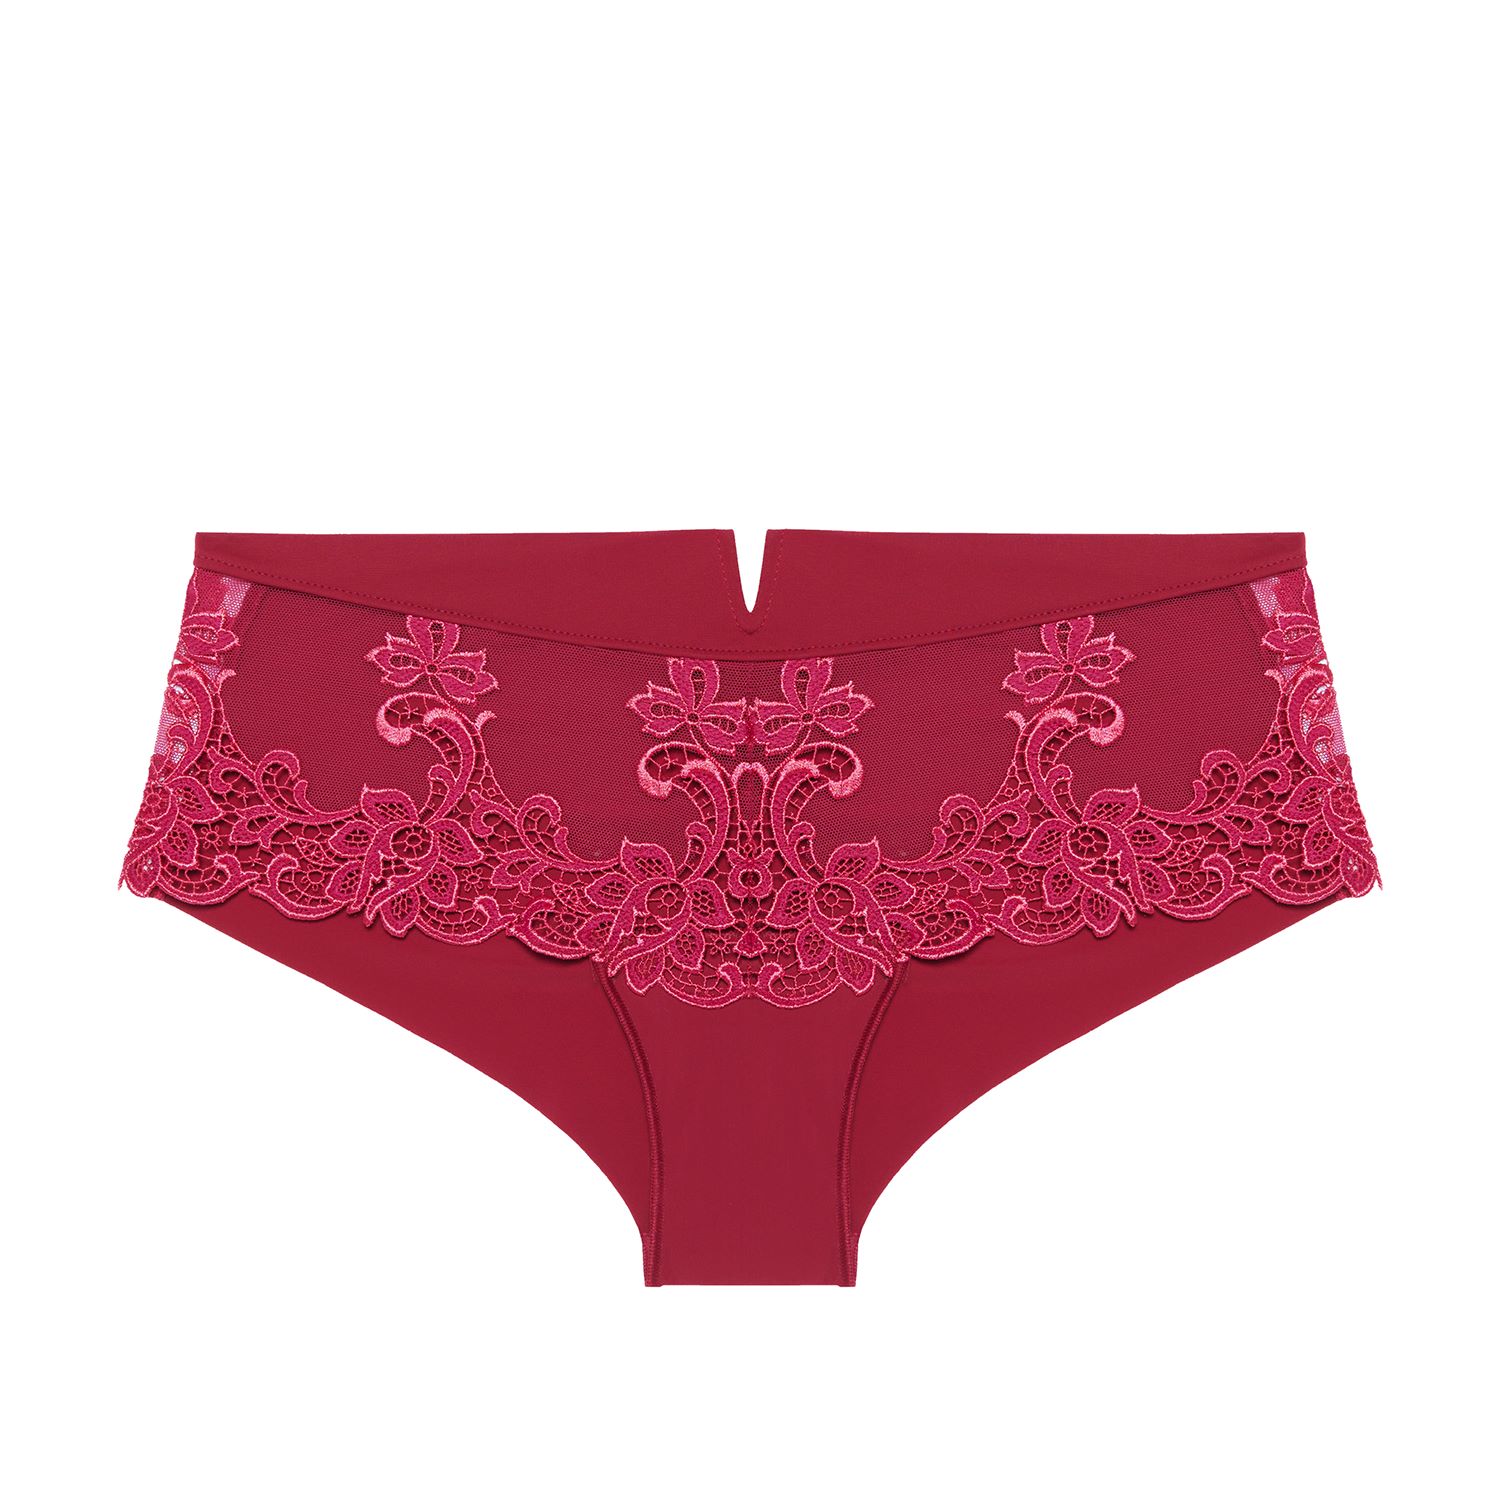 Saturey 3 Pieces/Set Lace Panties Women Underwear Panty Fashion